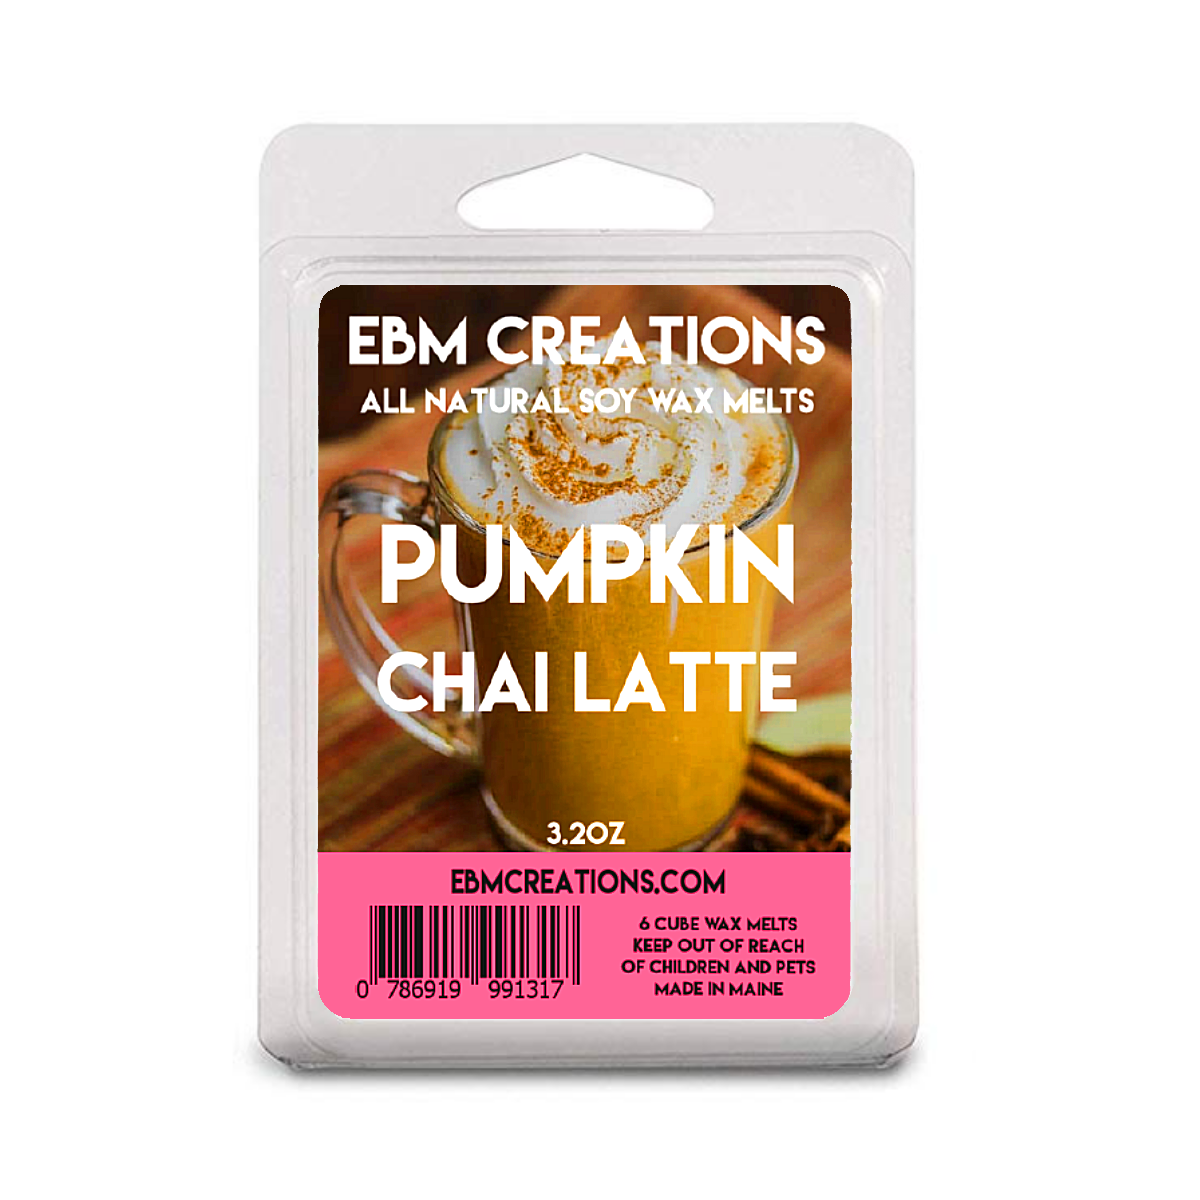 Pumpkin Chai Latte - 3.2 oz Clamshell